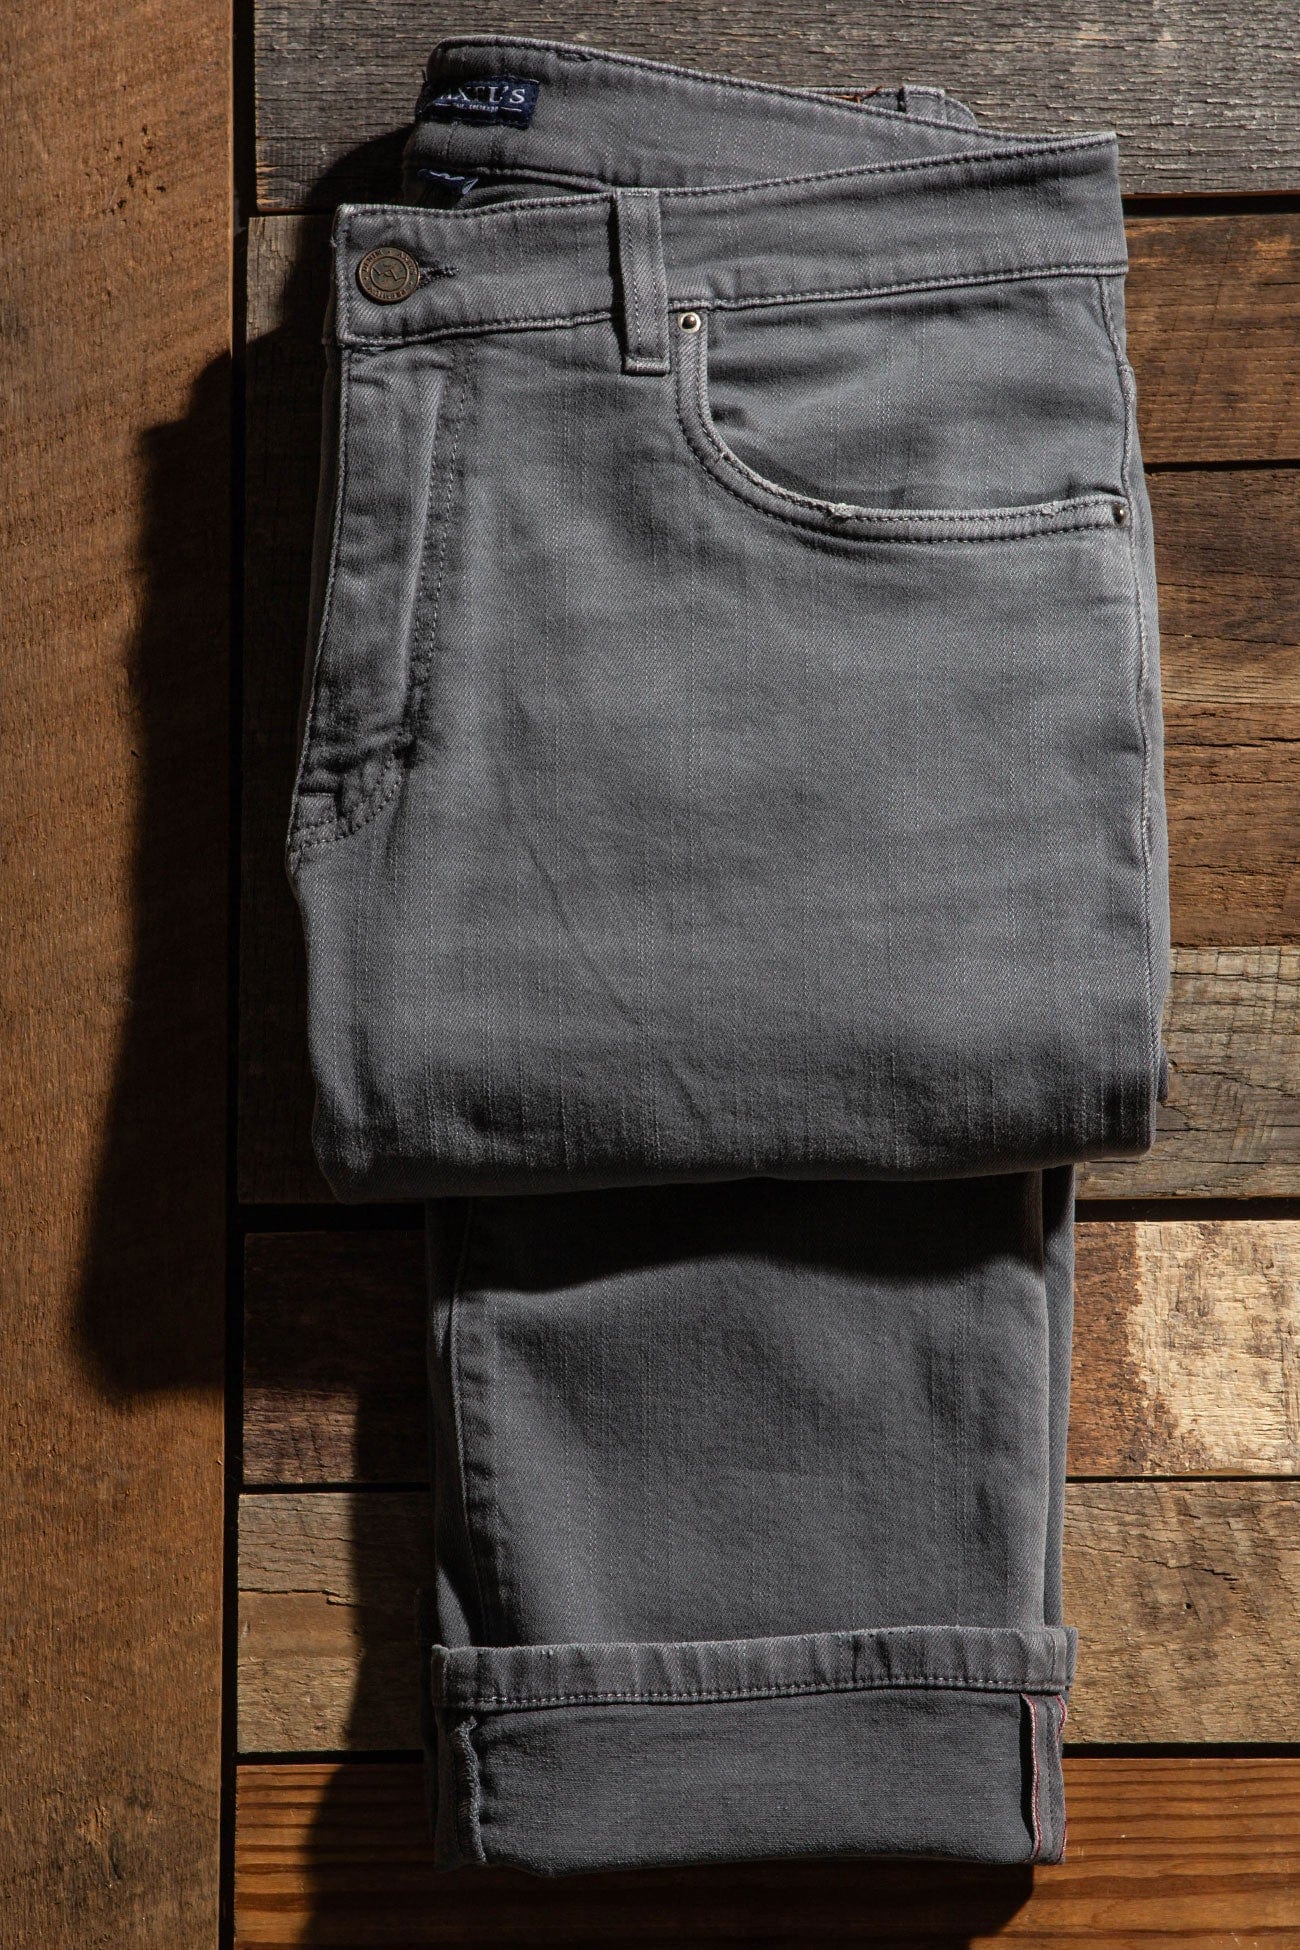 Axels Premium Denim Tucson Selvedge Denim In Grigio Mens - Pants - 5 Pocket